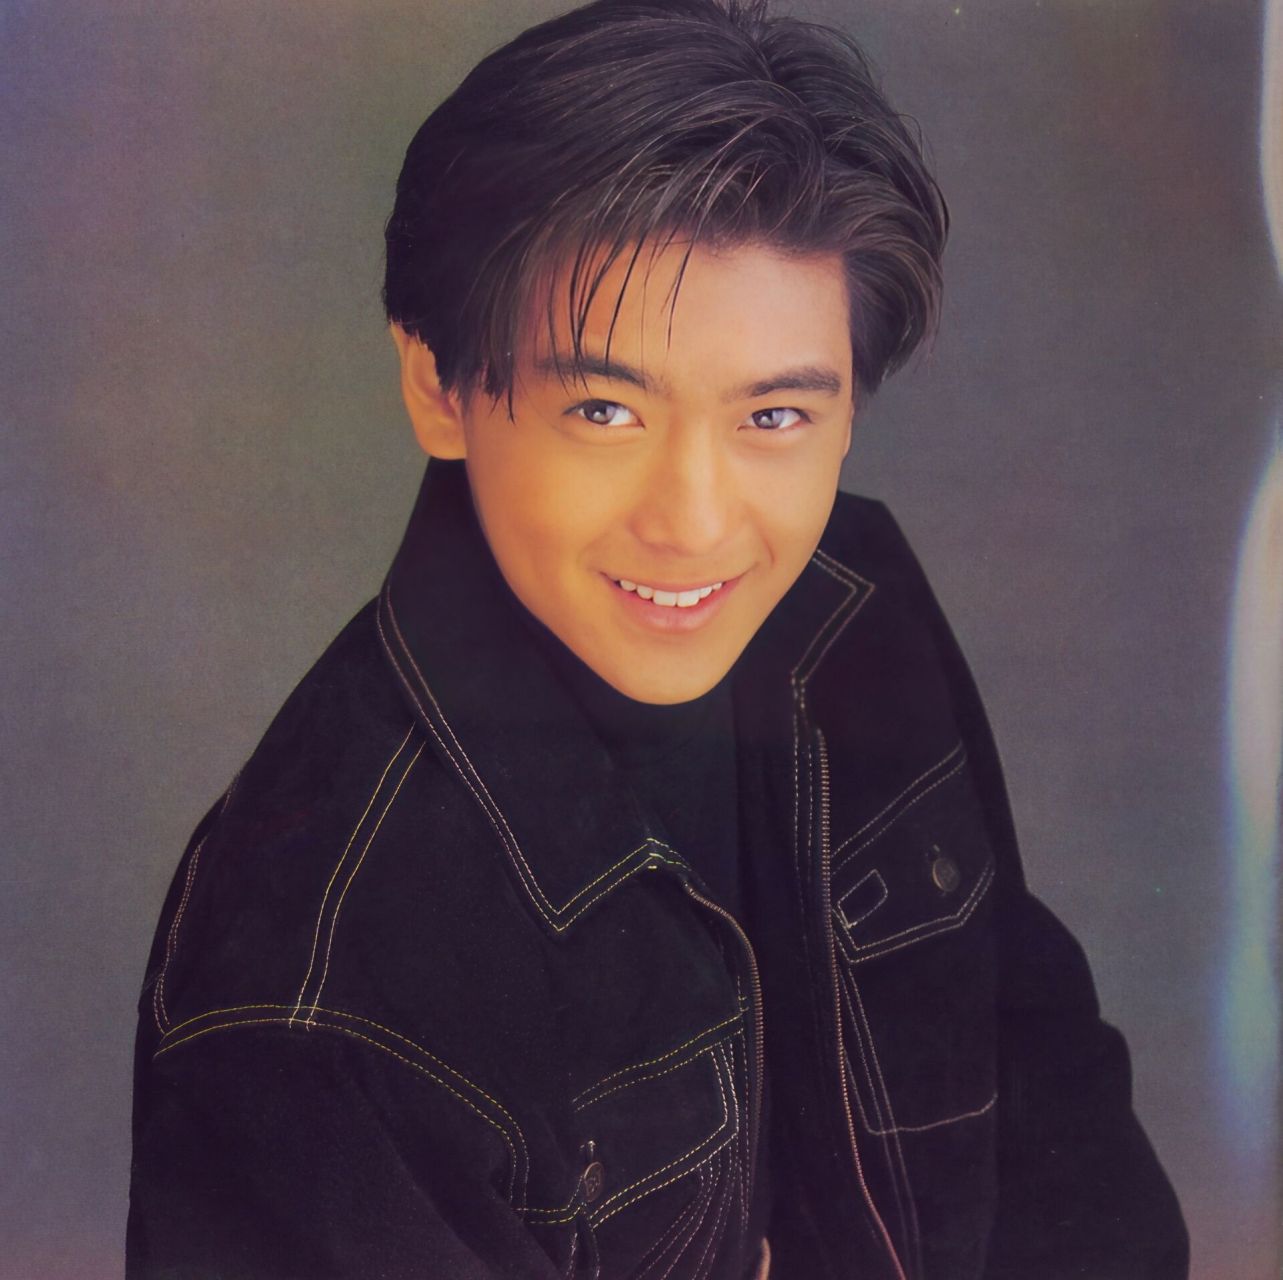 1992年2月,17岁的林志颖发行了首张专辑《不是每个恋曲都有美好回忆